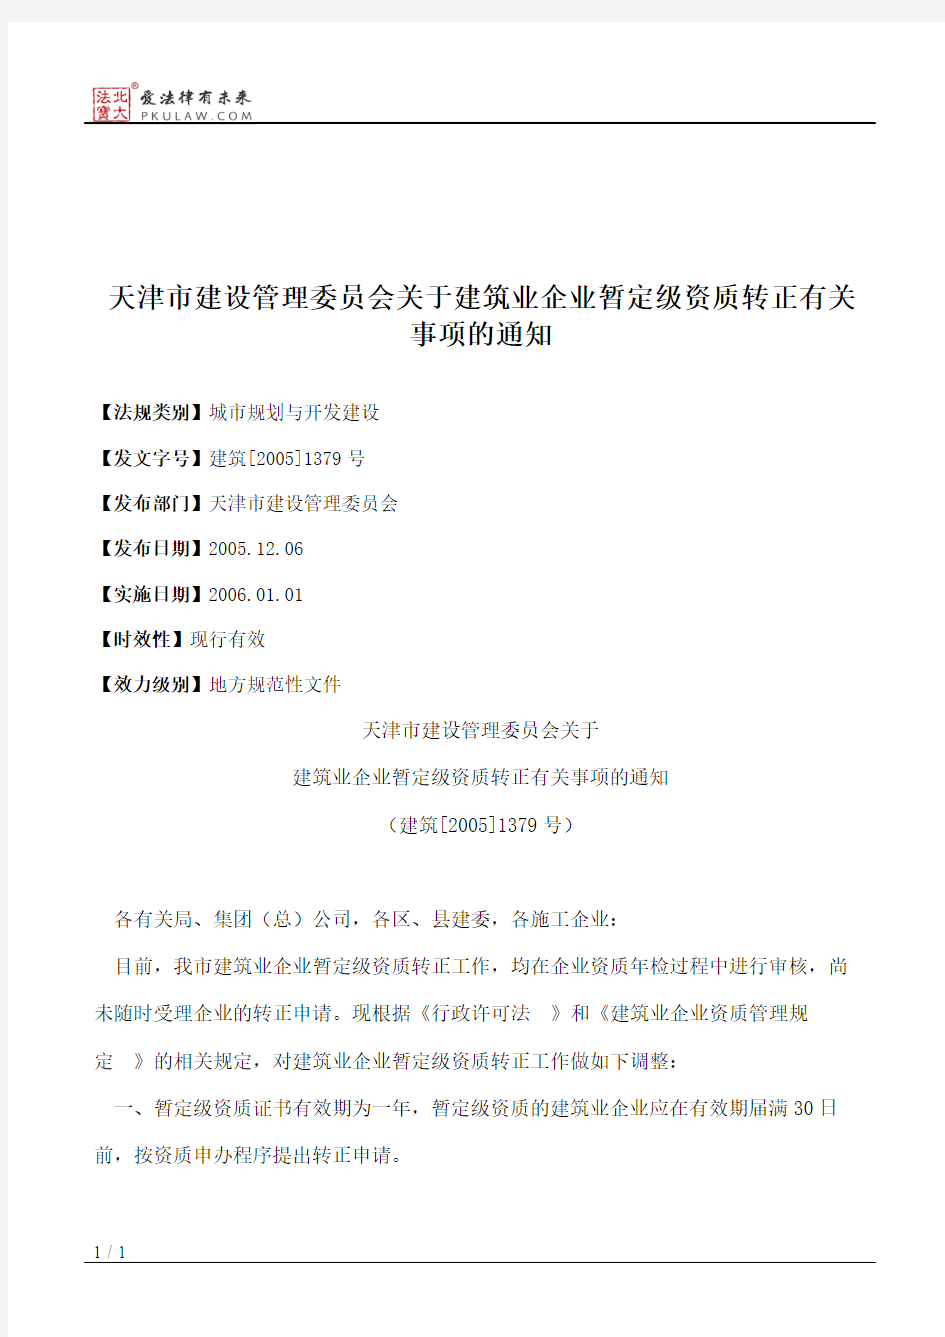 天津市建设管理委员会关于建筑业企业暂定级资质转正有关事项的通知